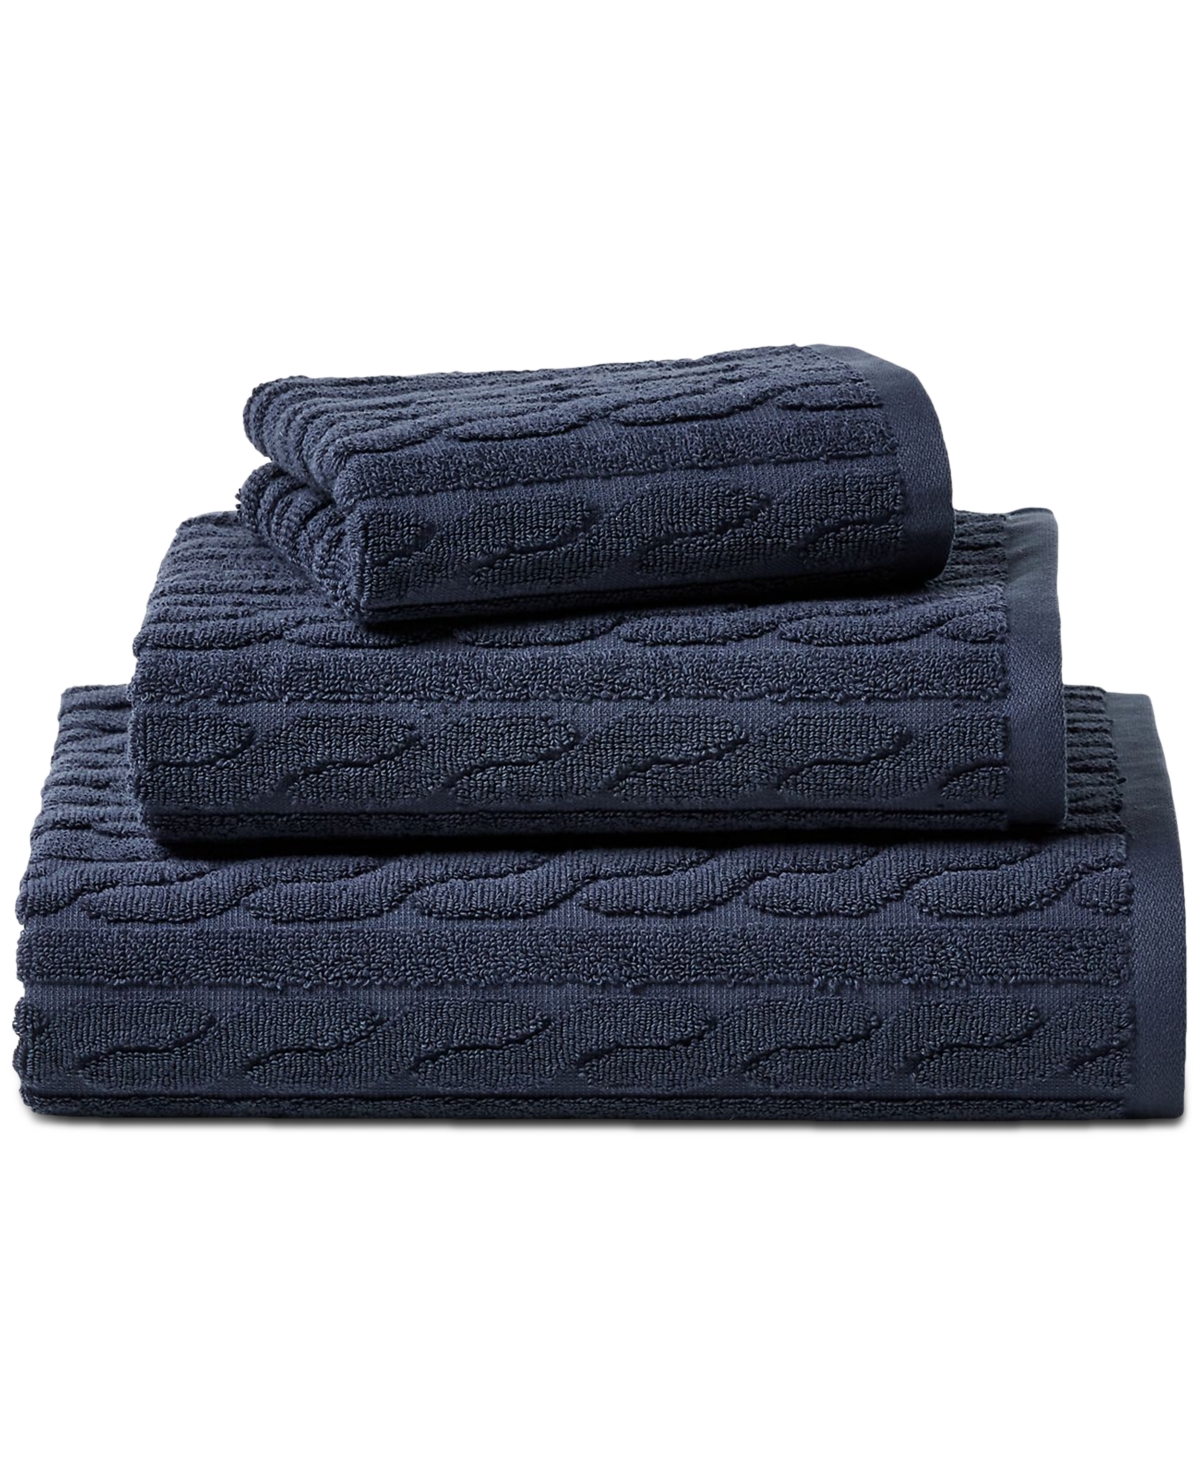 2 pc.Ralph Lauren Sanders Antimicrobial Cotton 30 x 56 Bath Towels  Lavender